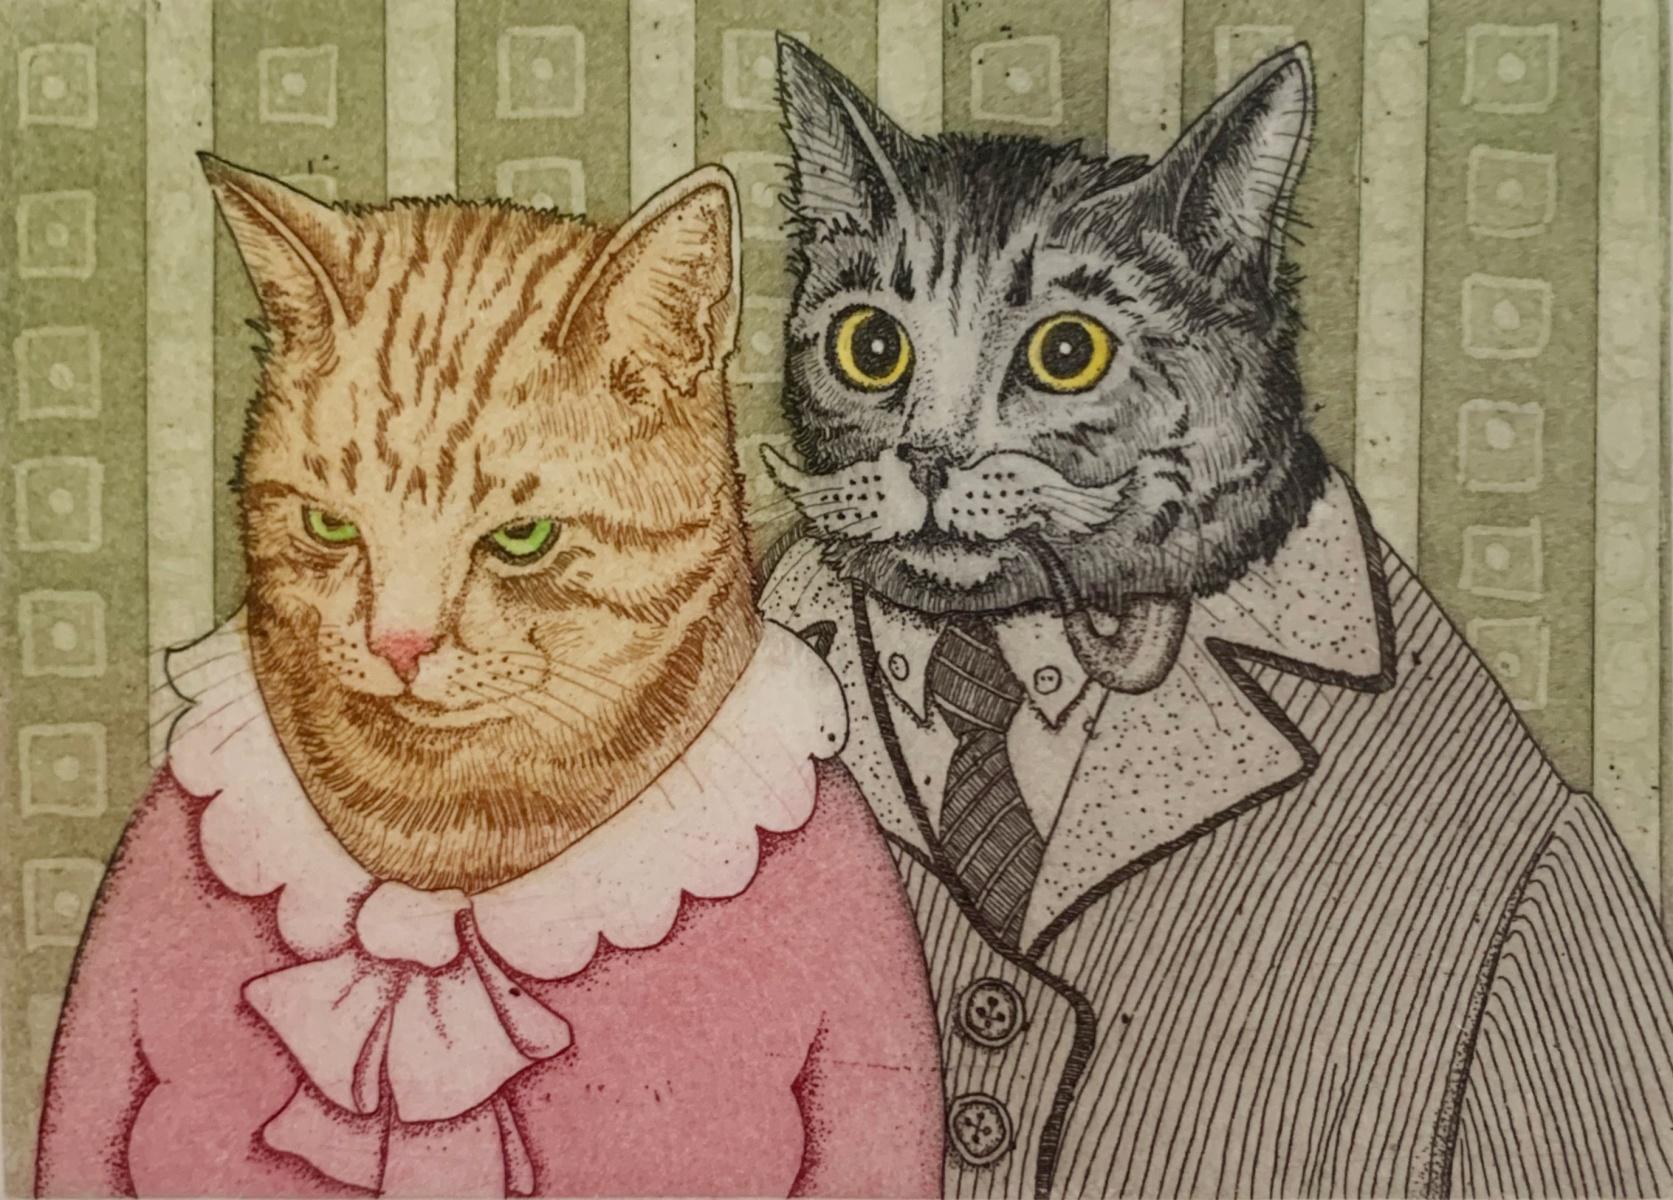 Figurative Print Marian Bocianowski - M et Mme Meow. Impression figurative, animaux, chats, réaliste, artiste polonais